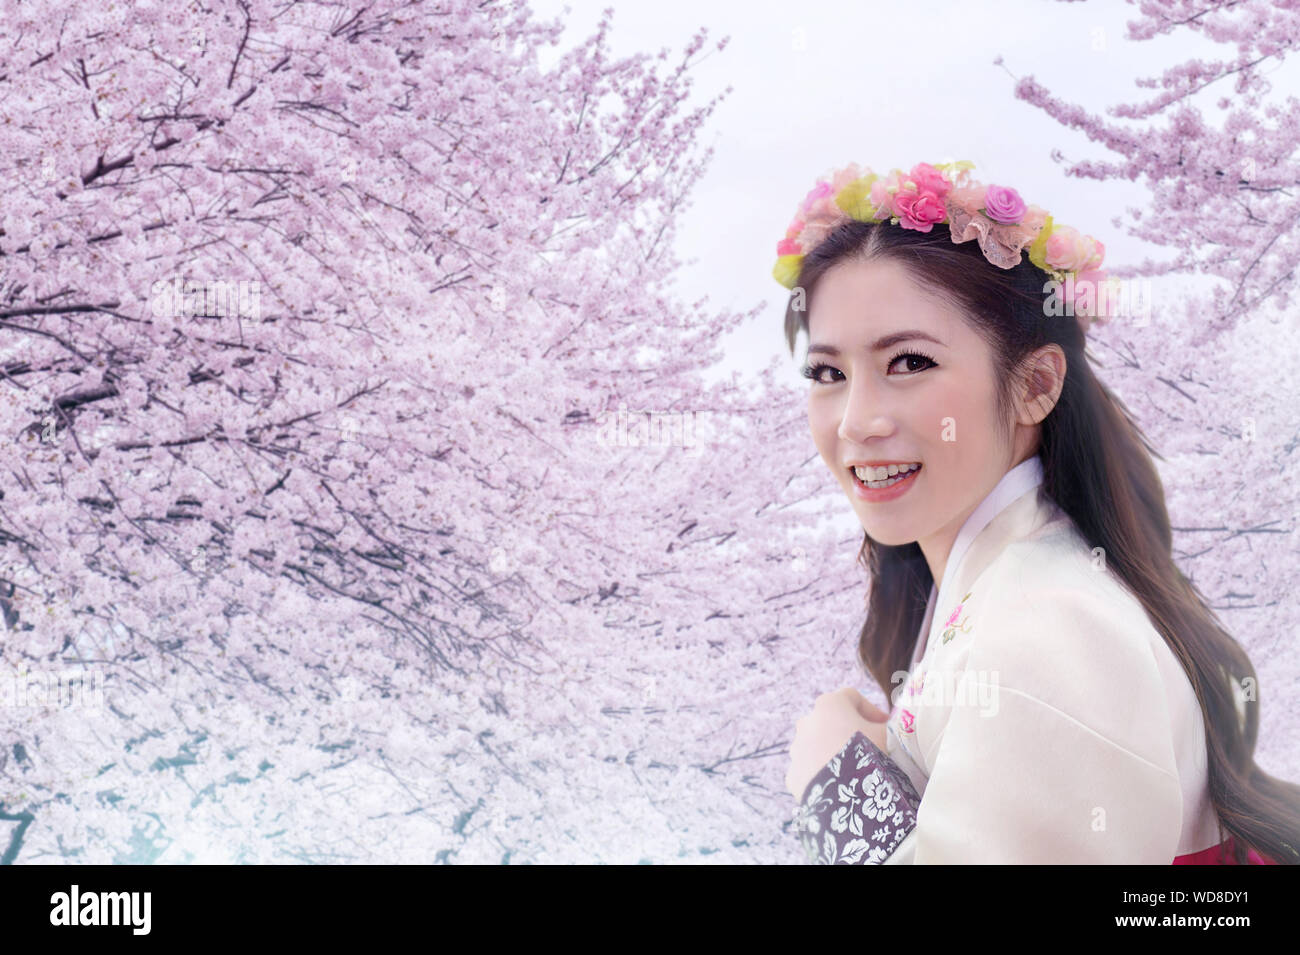 Ritratto Di Donna sorridente indossando la tradizione Hanbok contro Cherry Blossom Tree Foto Stock